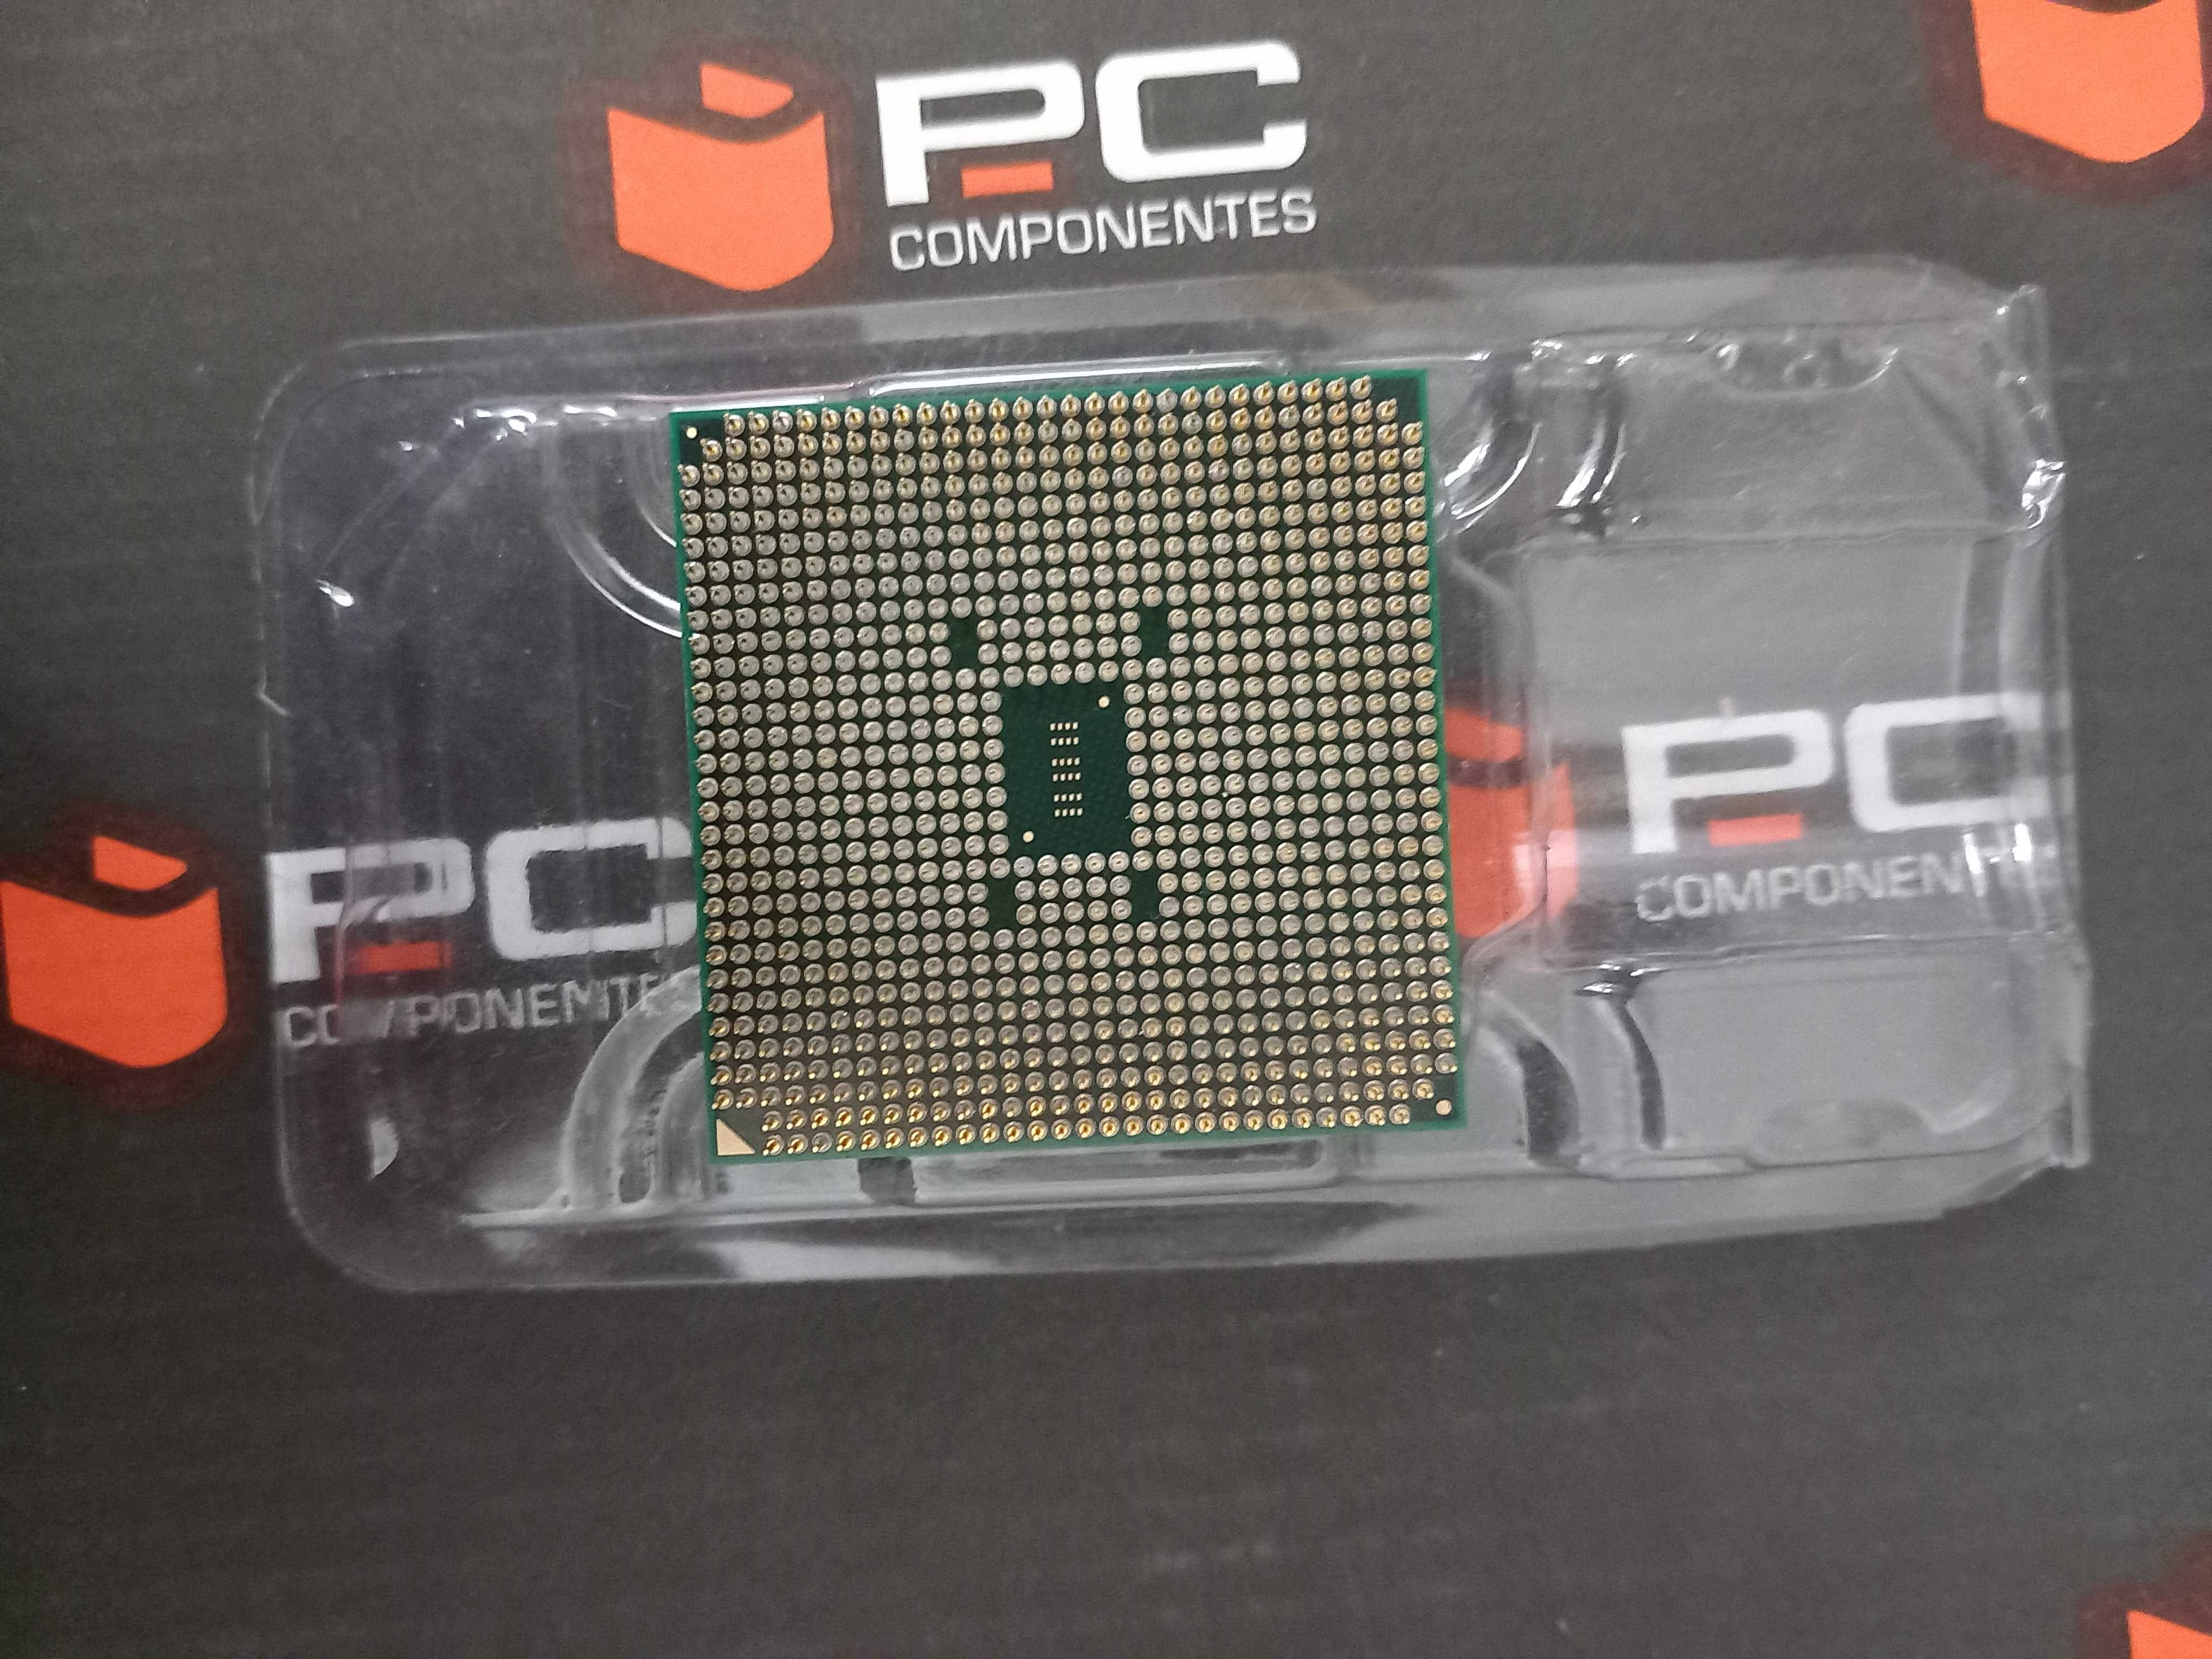 AMD A4 - 3300 APU